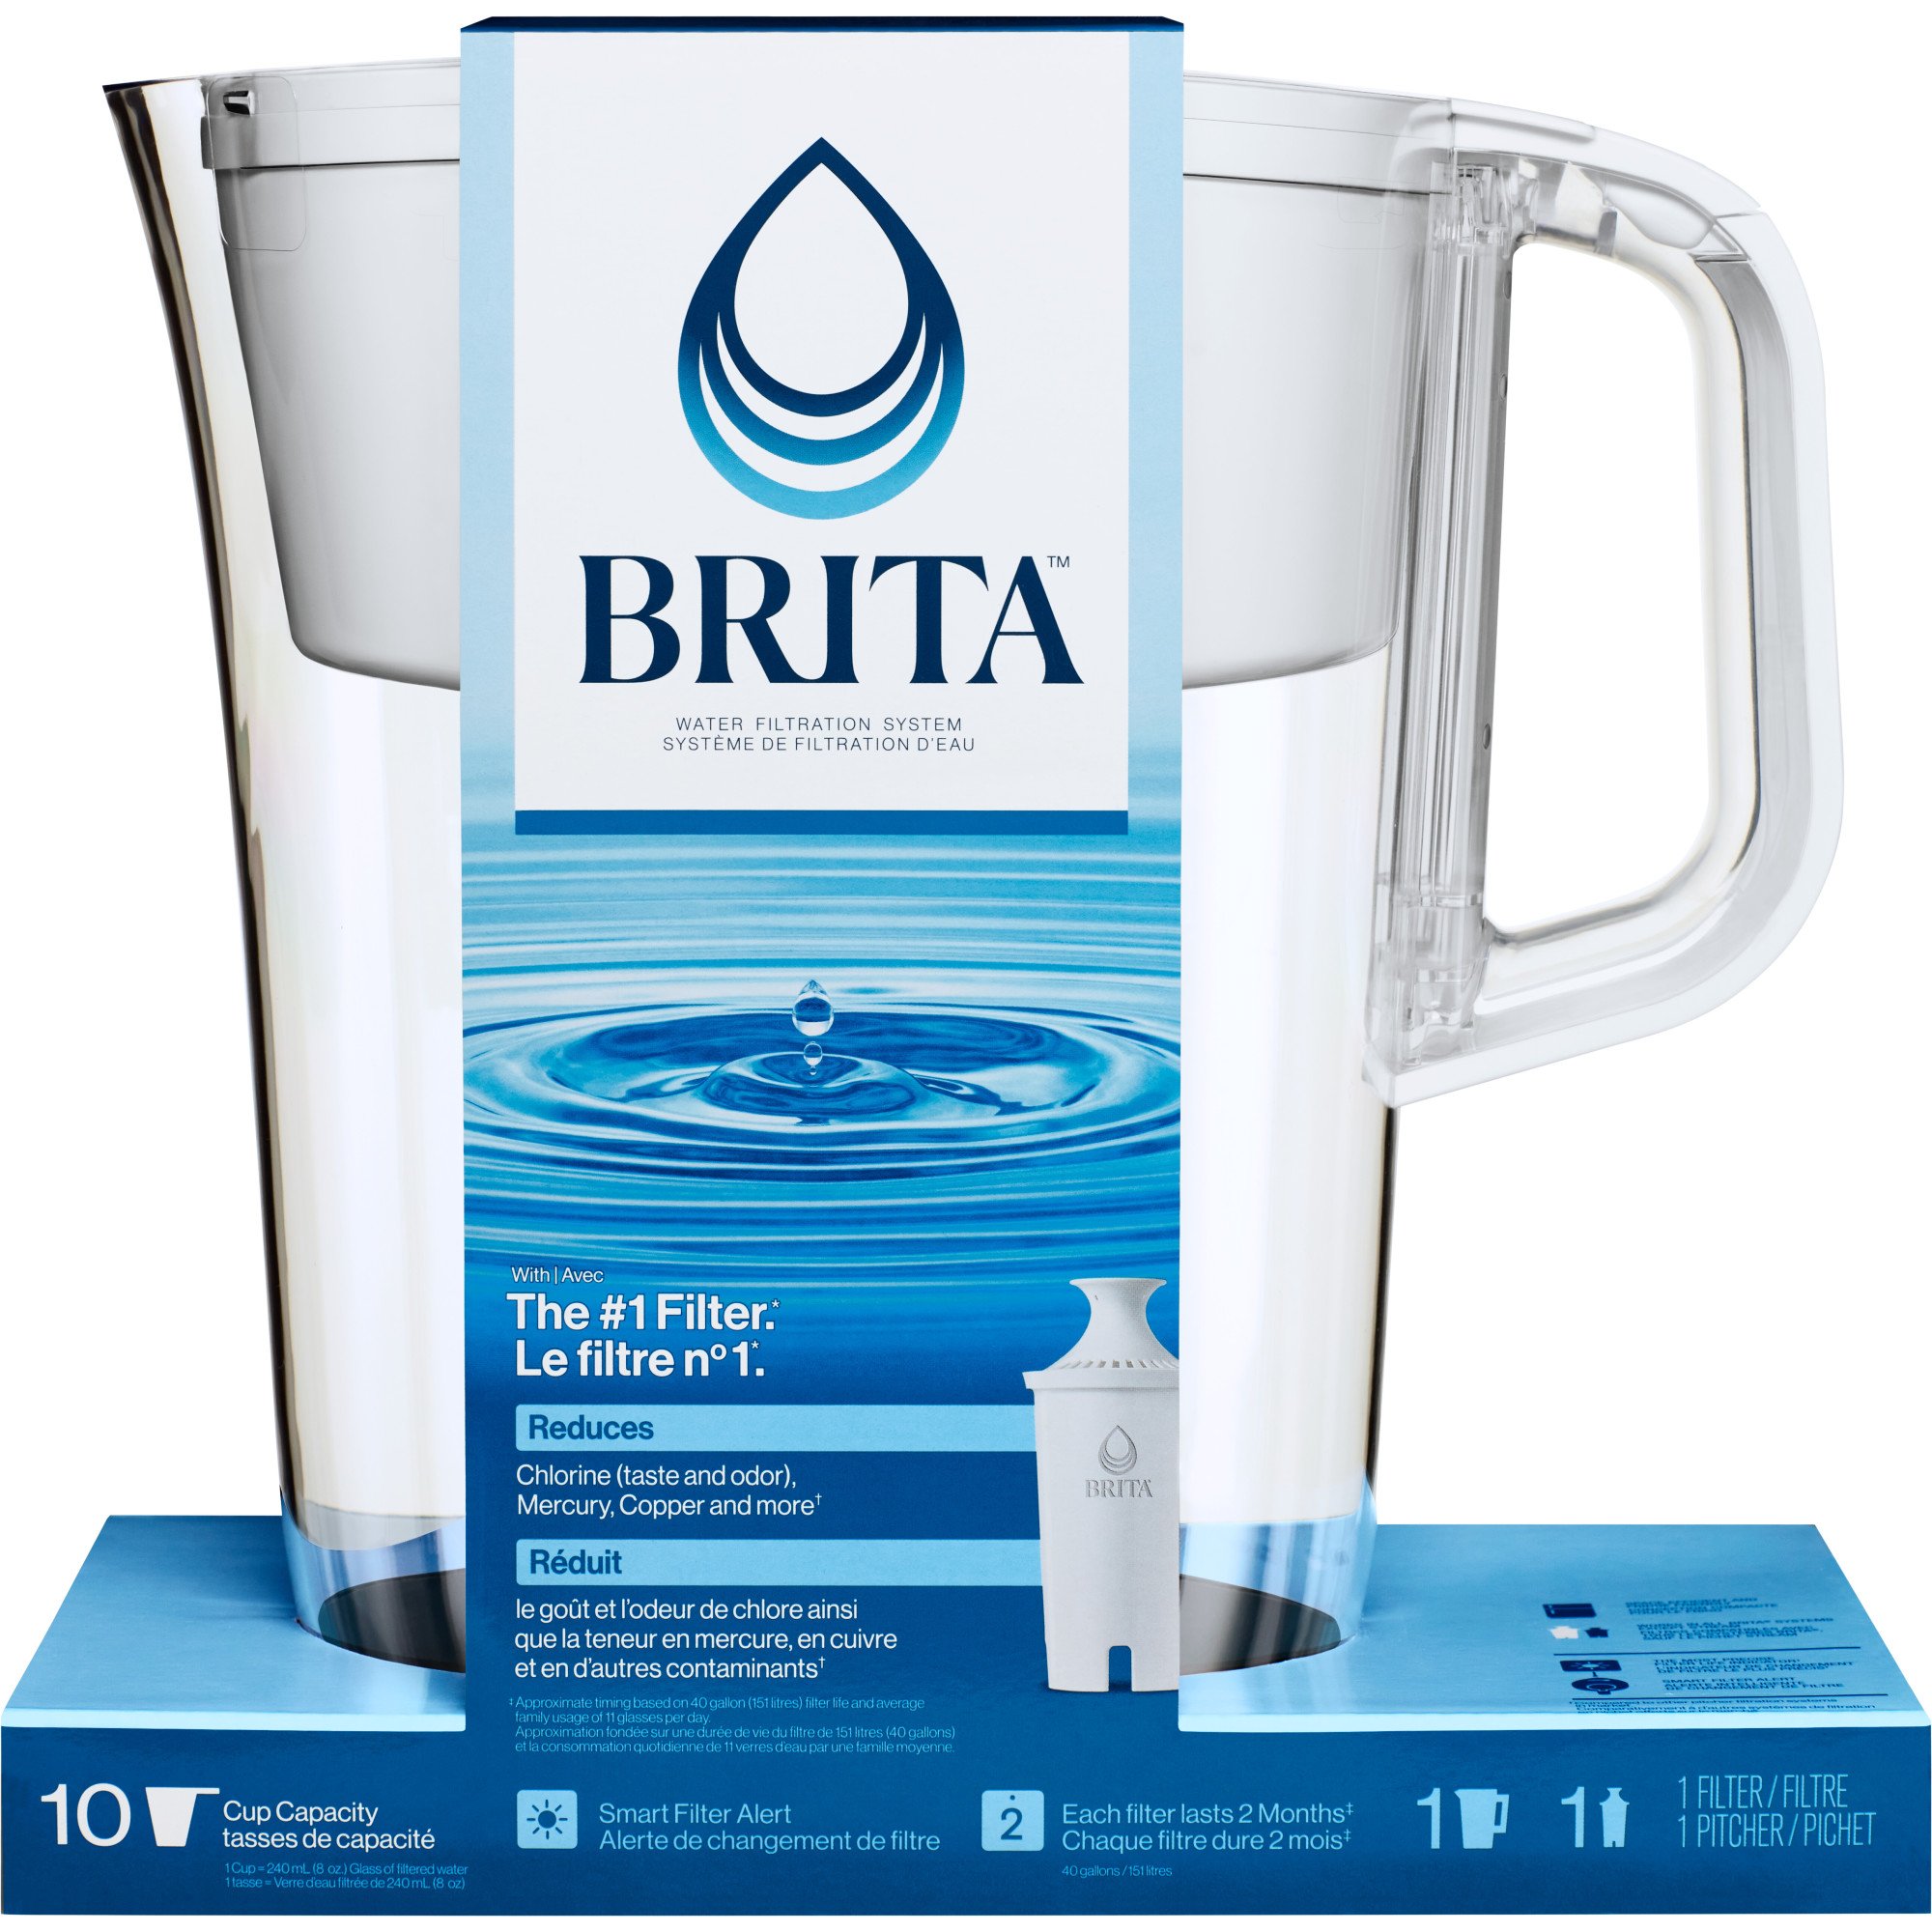 Trænge ind sendt Taiko mave Brita Water Filtration System - Shop Water Filters at H-E-B